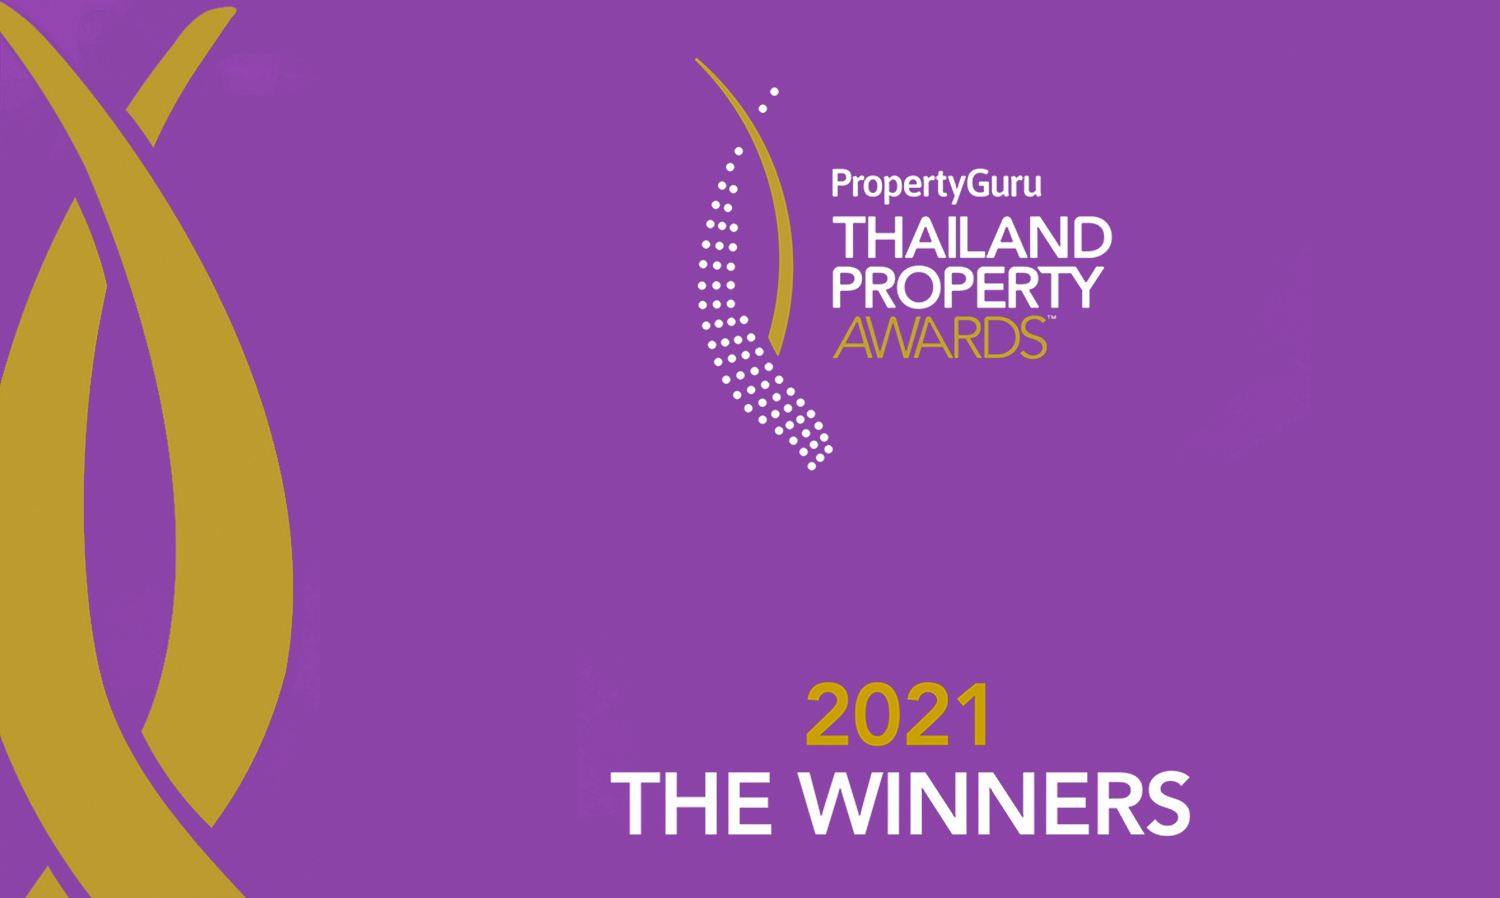 ประกาศผลรางวัล PropertyGuru Thailand Property Awards ครั้งที่ 16